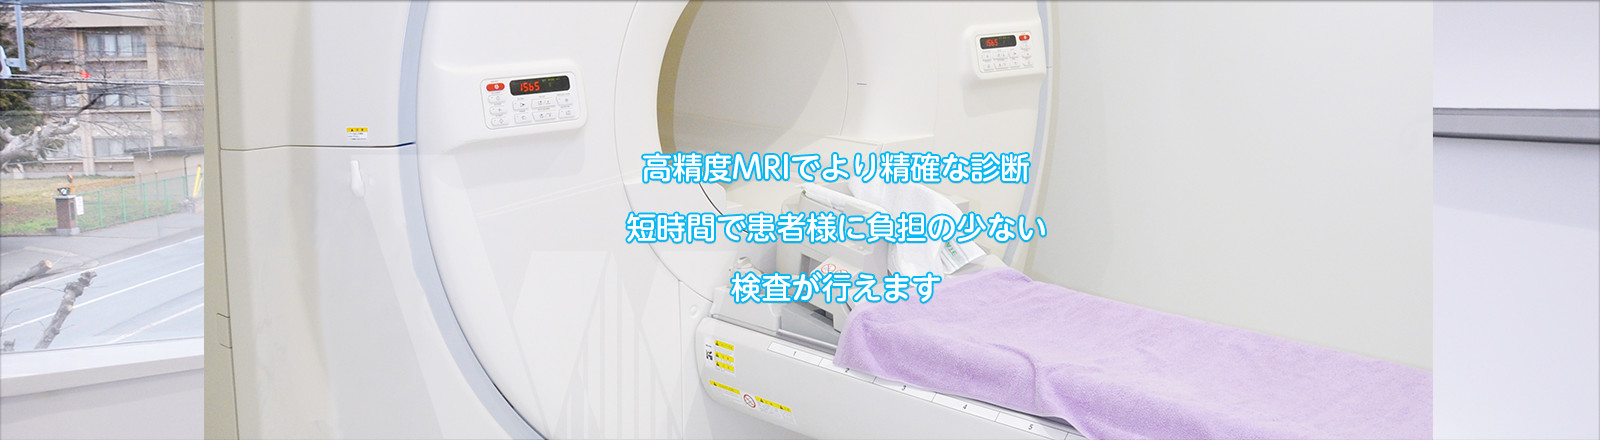 高性度MRI でより精確な診断。短時間で患者様に負担の少ない検査が行えます